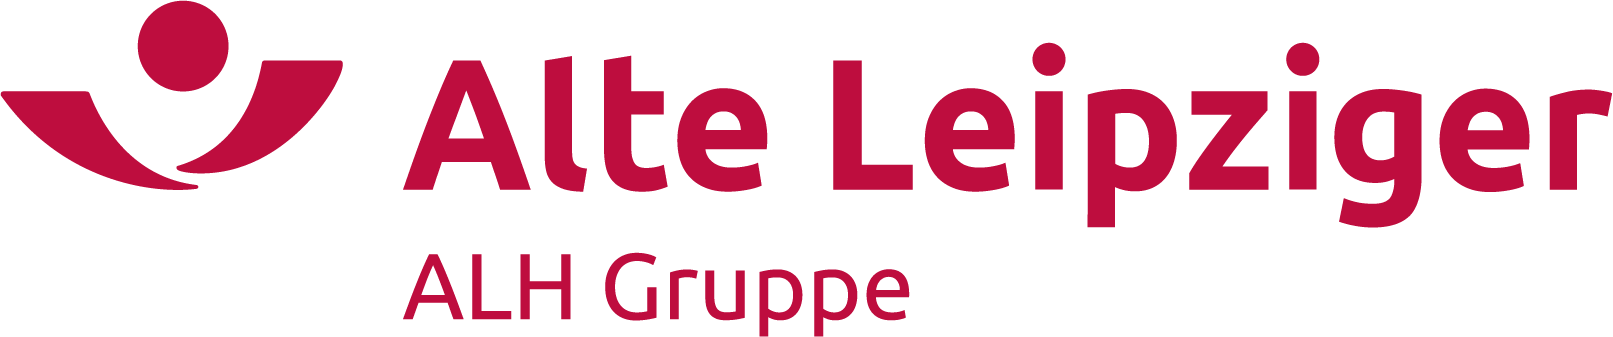 Logo der Alte Leipziger von der ALH Gruppe